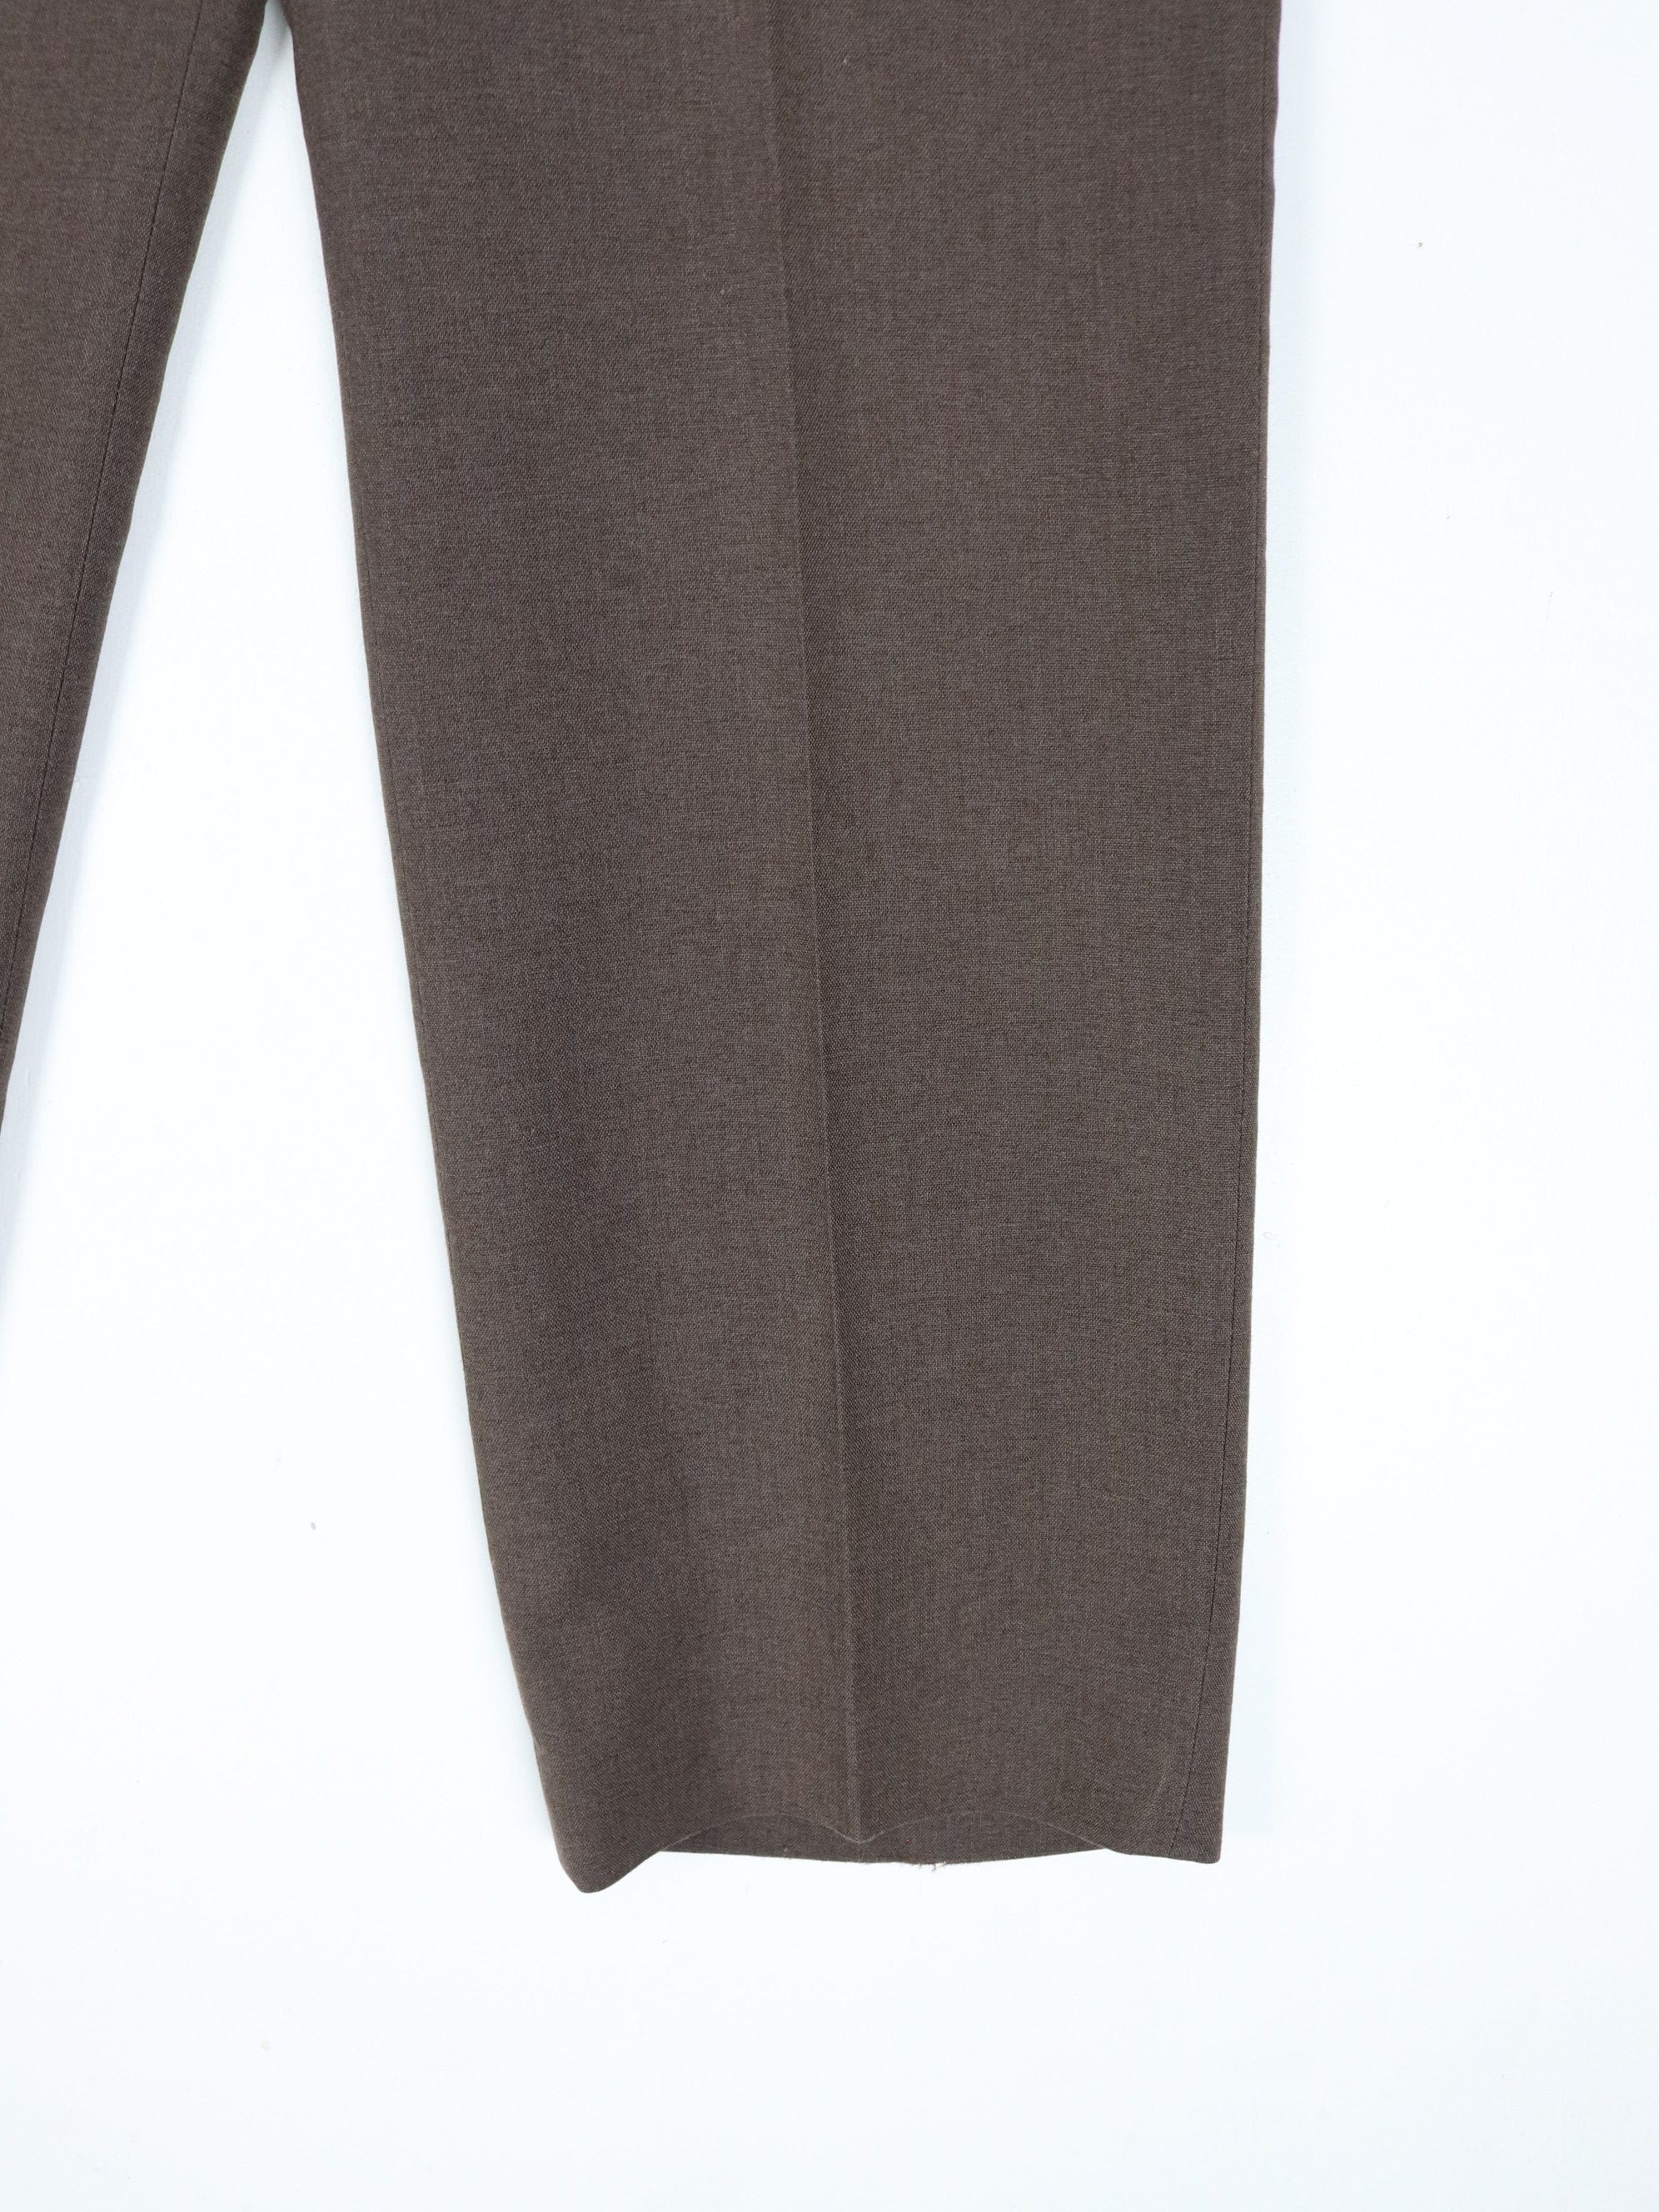 Vintage Haggar Pants Fits Mens 34 x 30 Brown Pleated Dress